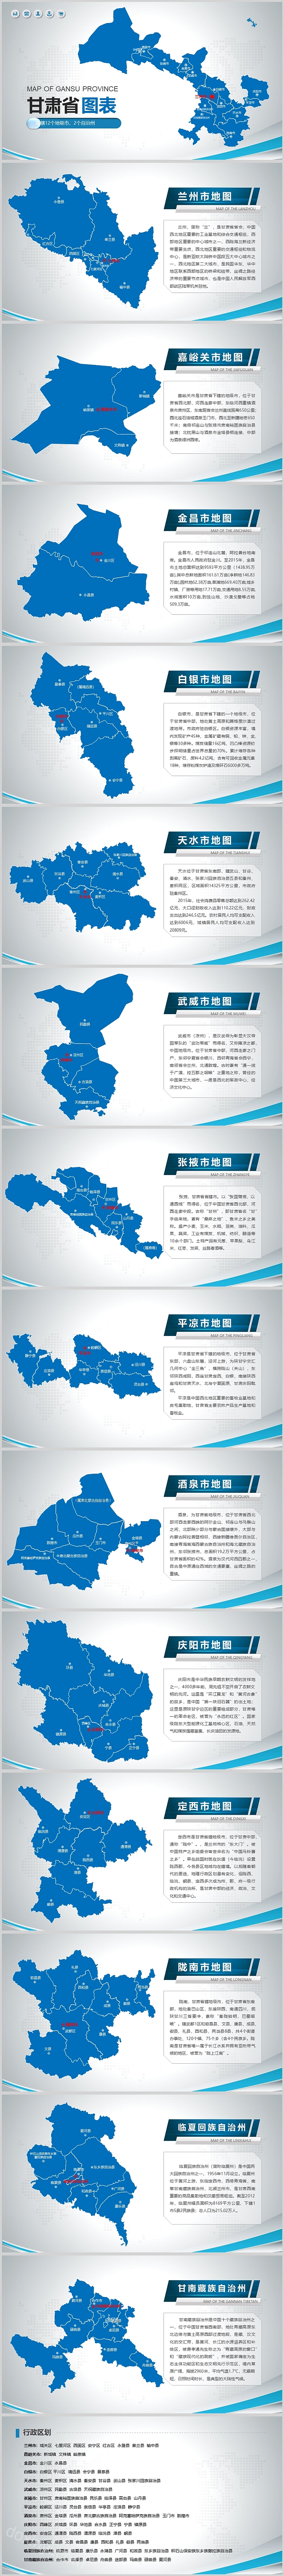 中国地图甘肃省地图图表ppt